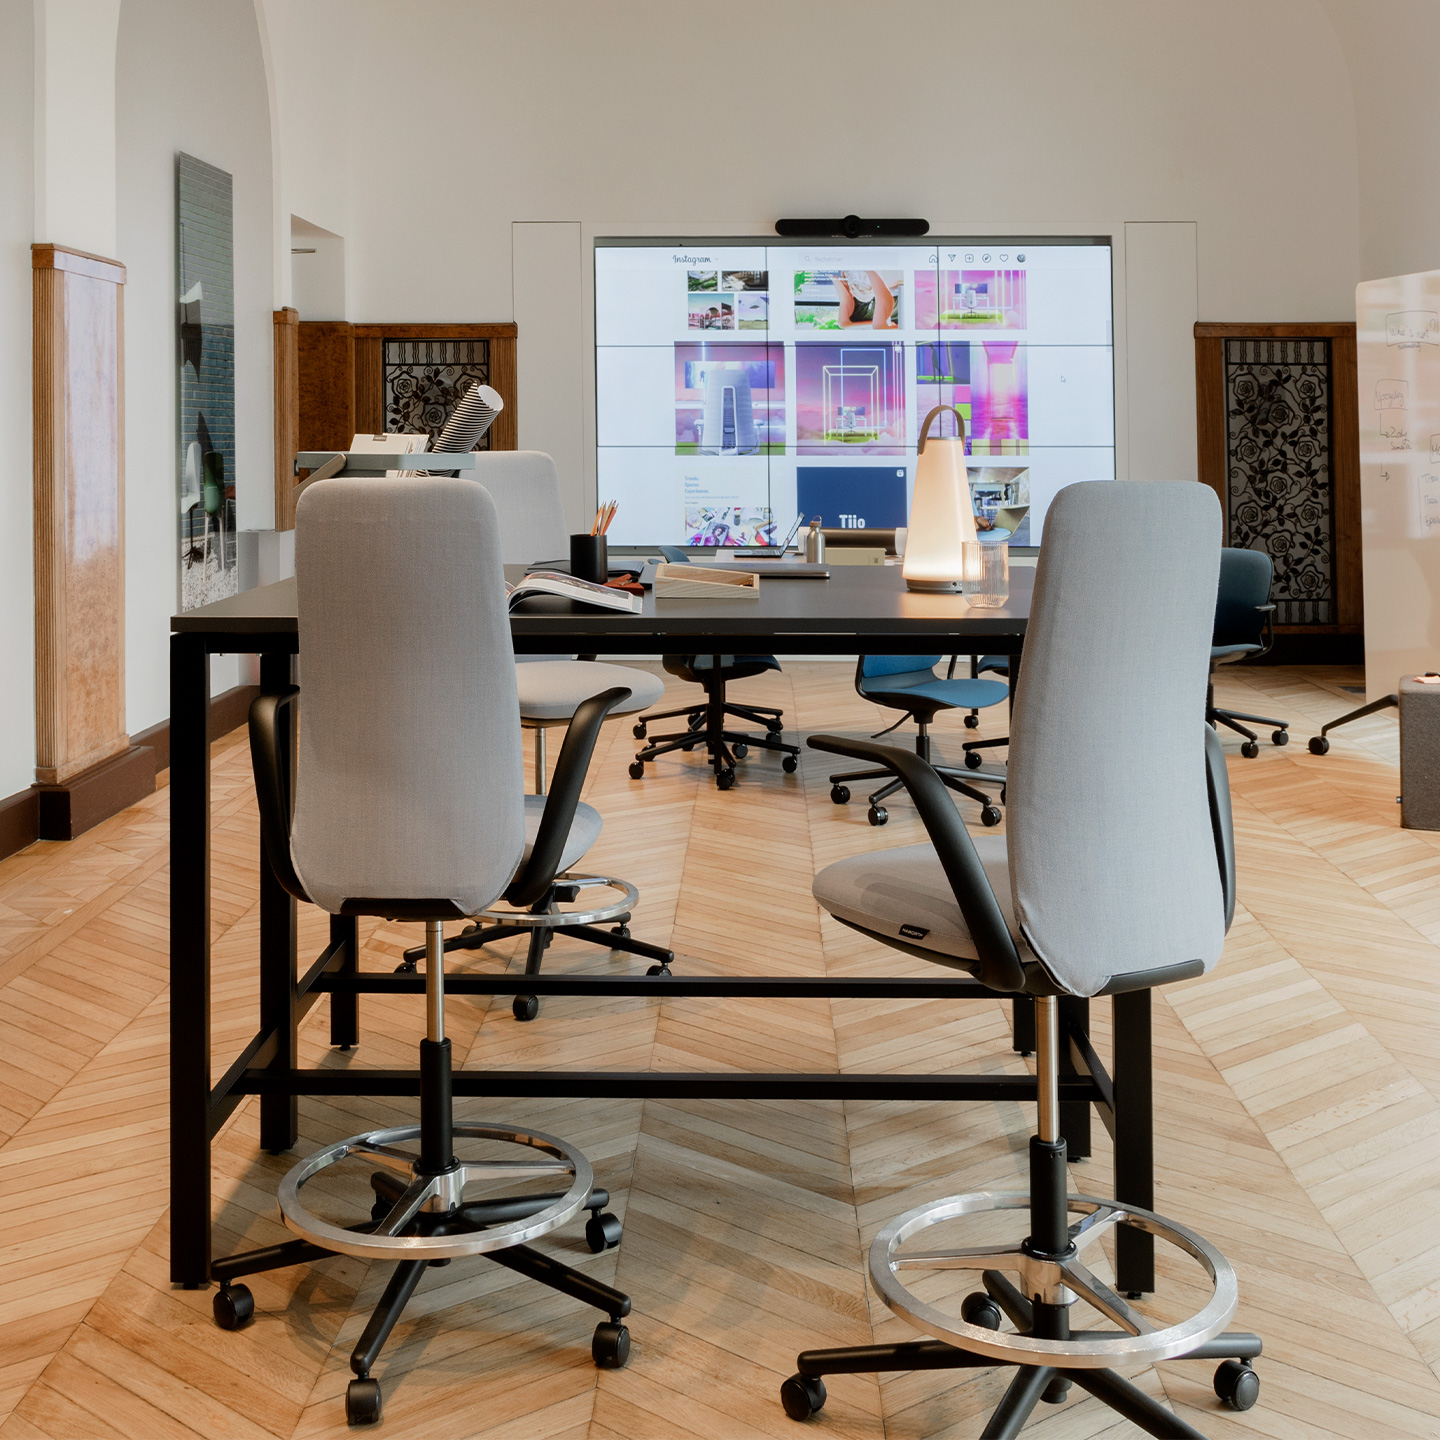 Le tabouret Nia est une alternative au siège  classique dans les espaces de travail agiles, grâce à son ergonomie et son confort.